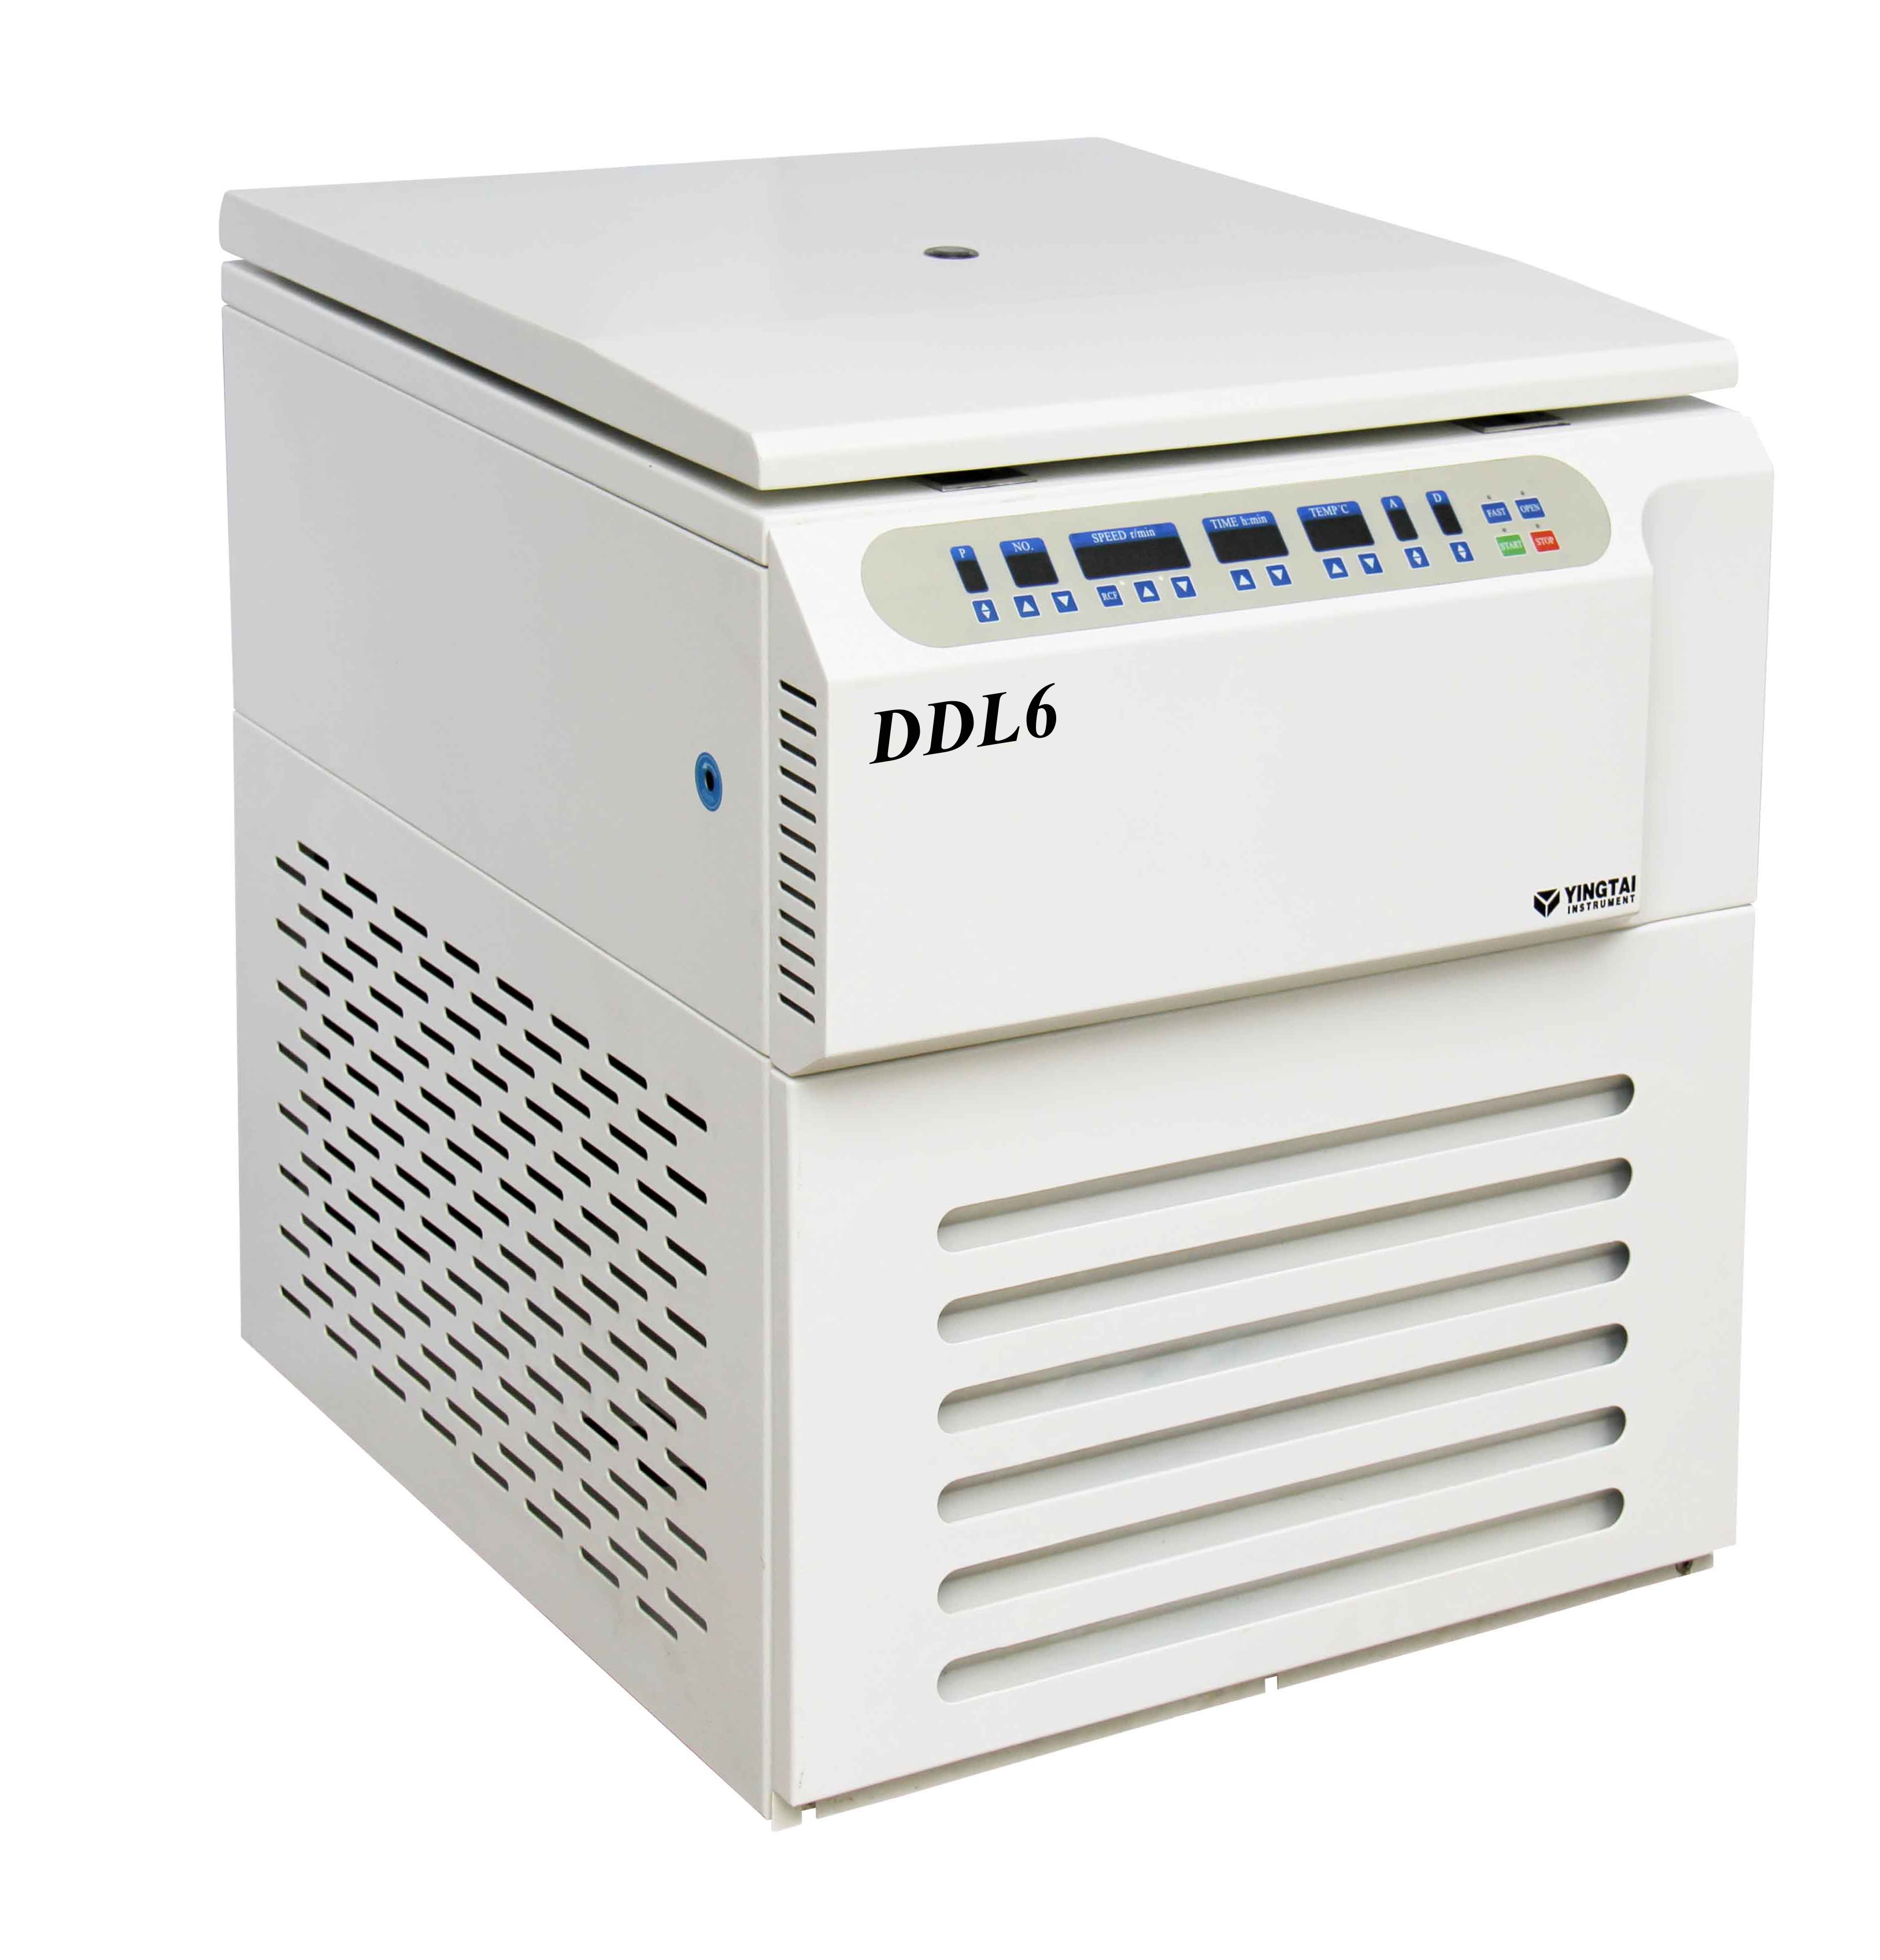 DDL6大容量冷凍離心機